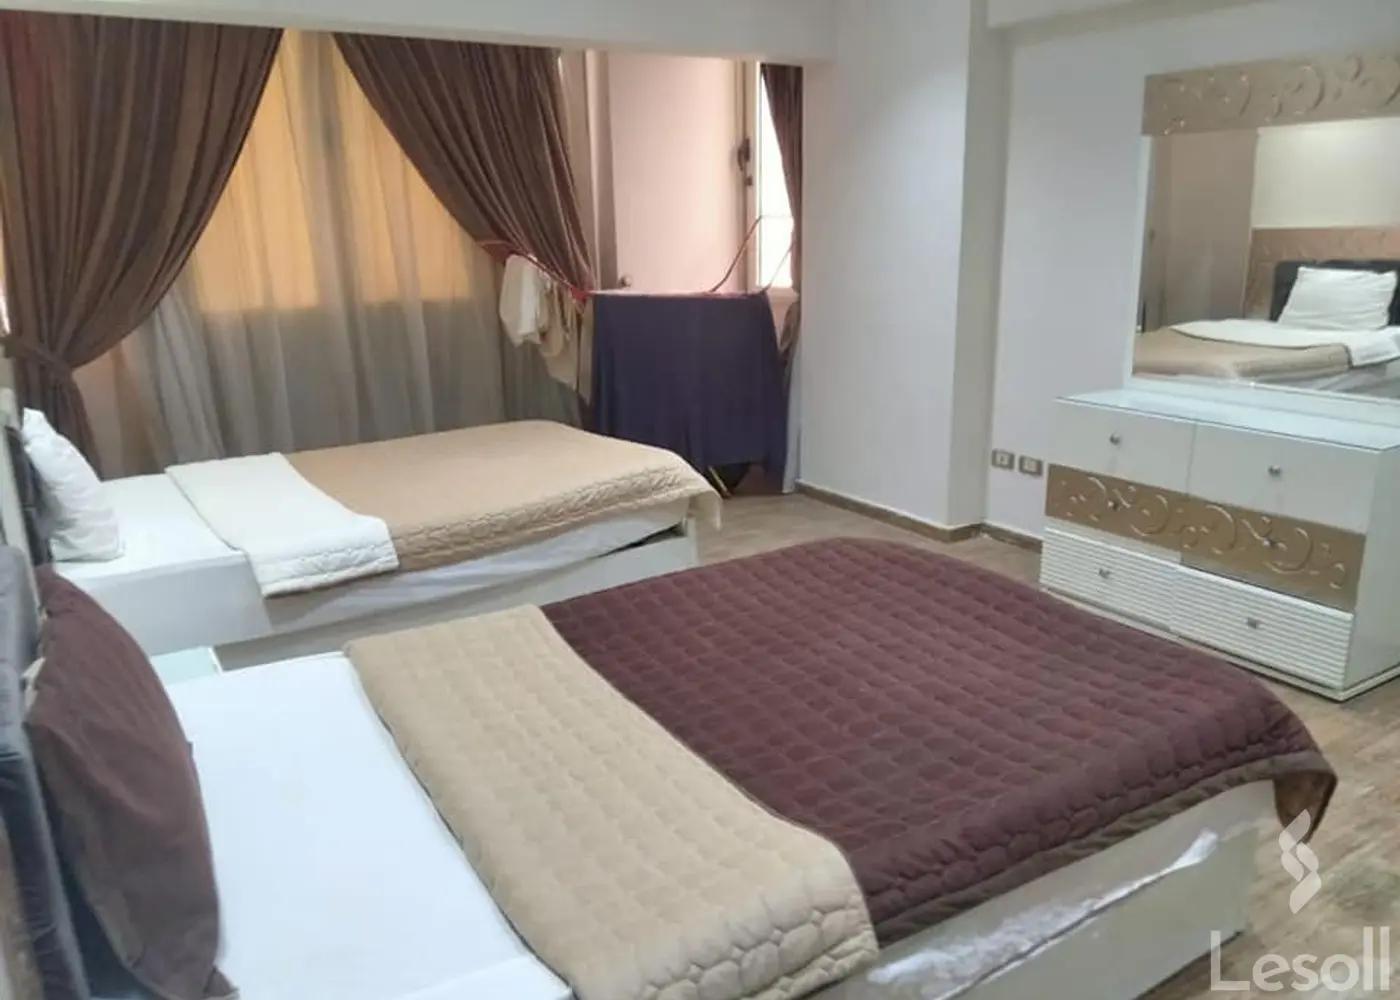 شقة فندقية مميزة من المالك مباشر بالمهندسين مقدمة للاخوة العرب